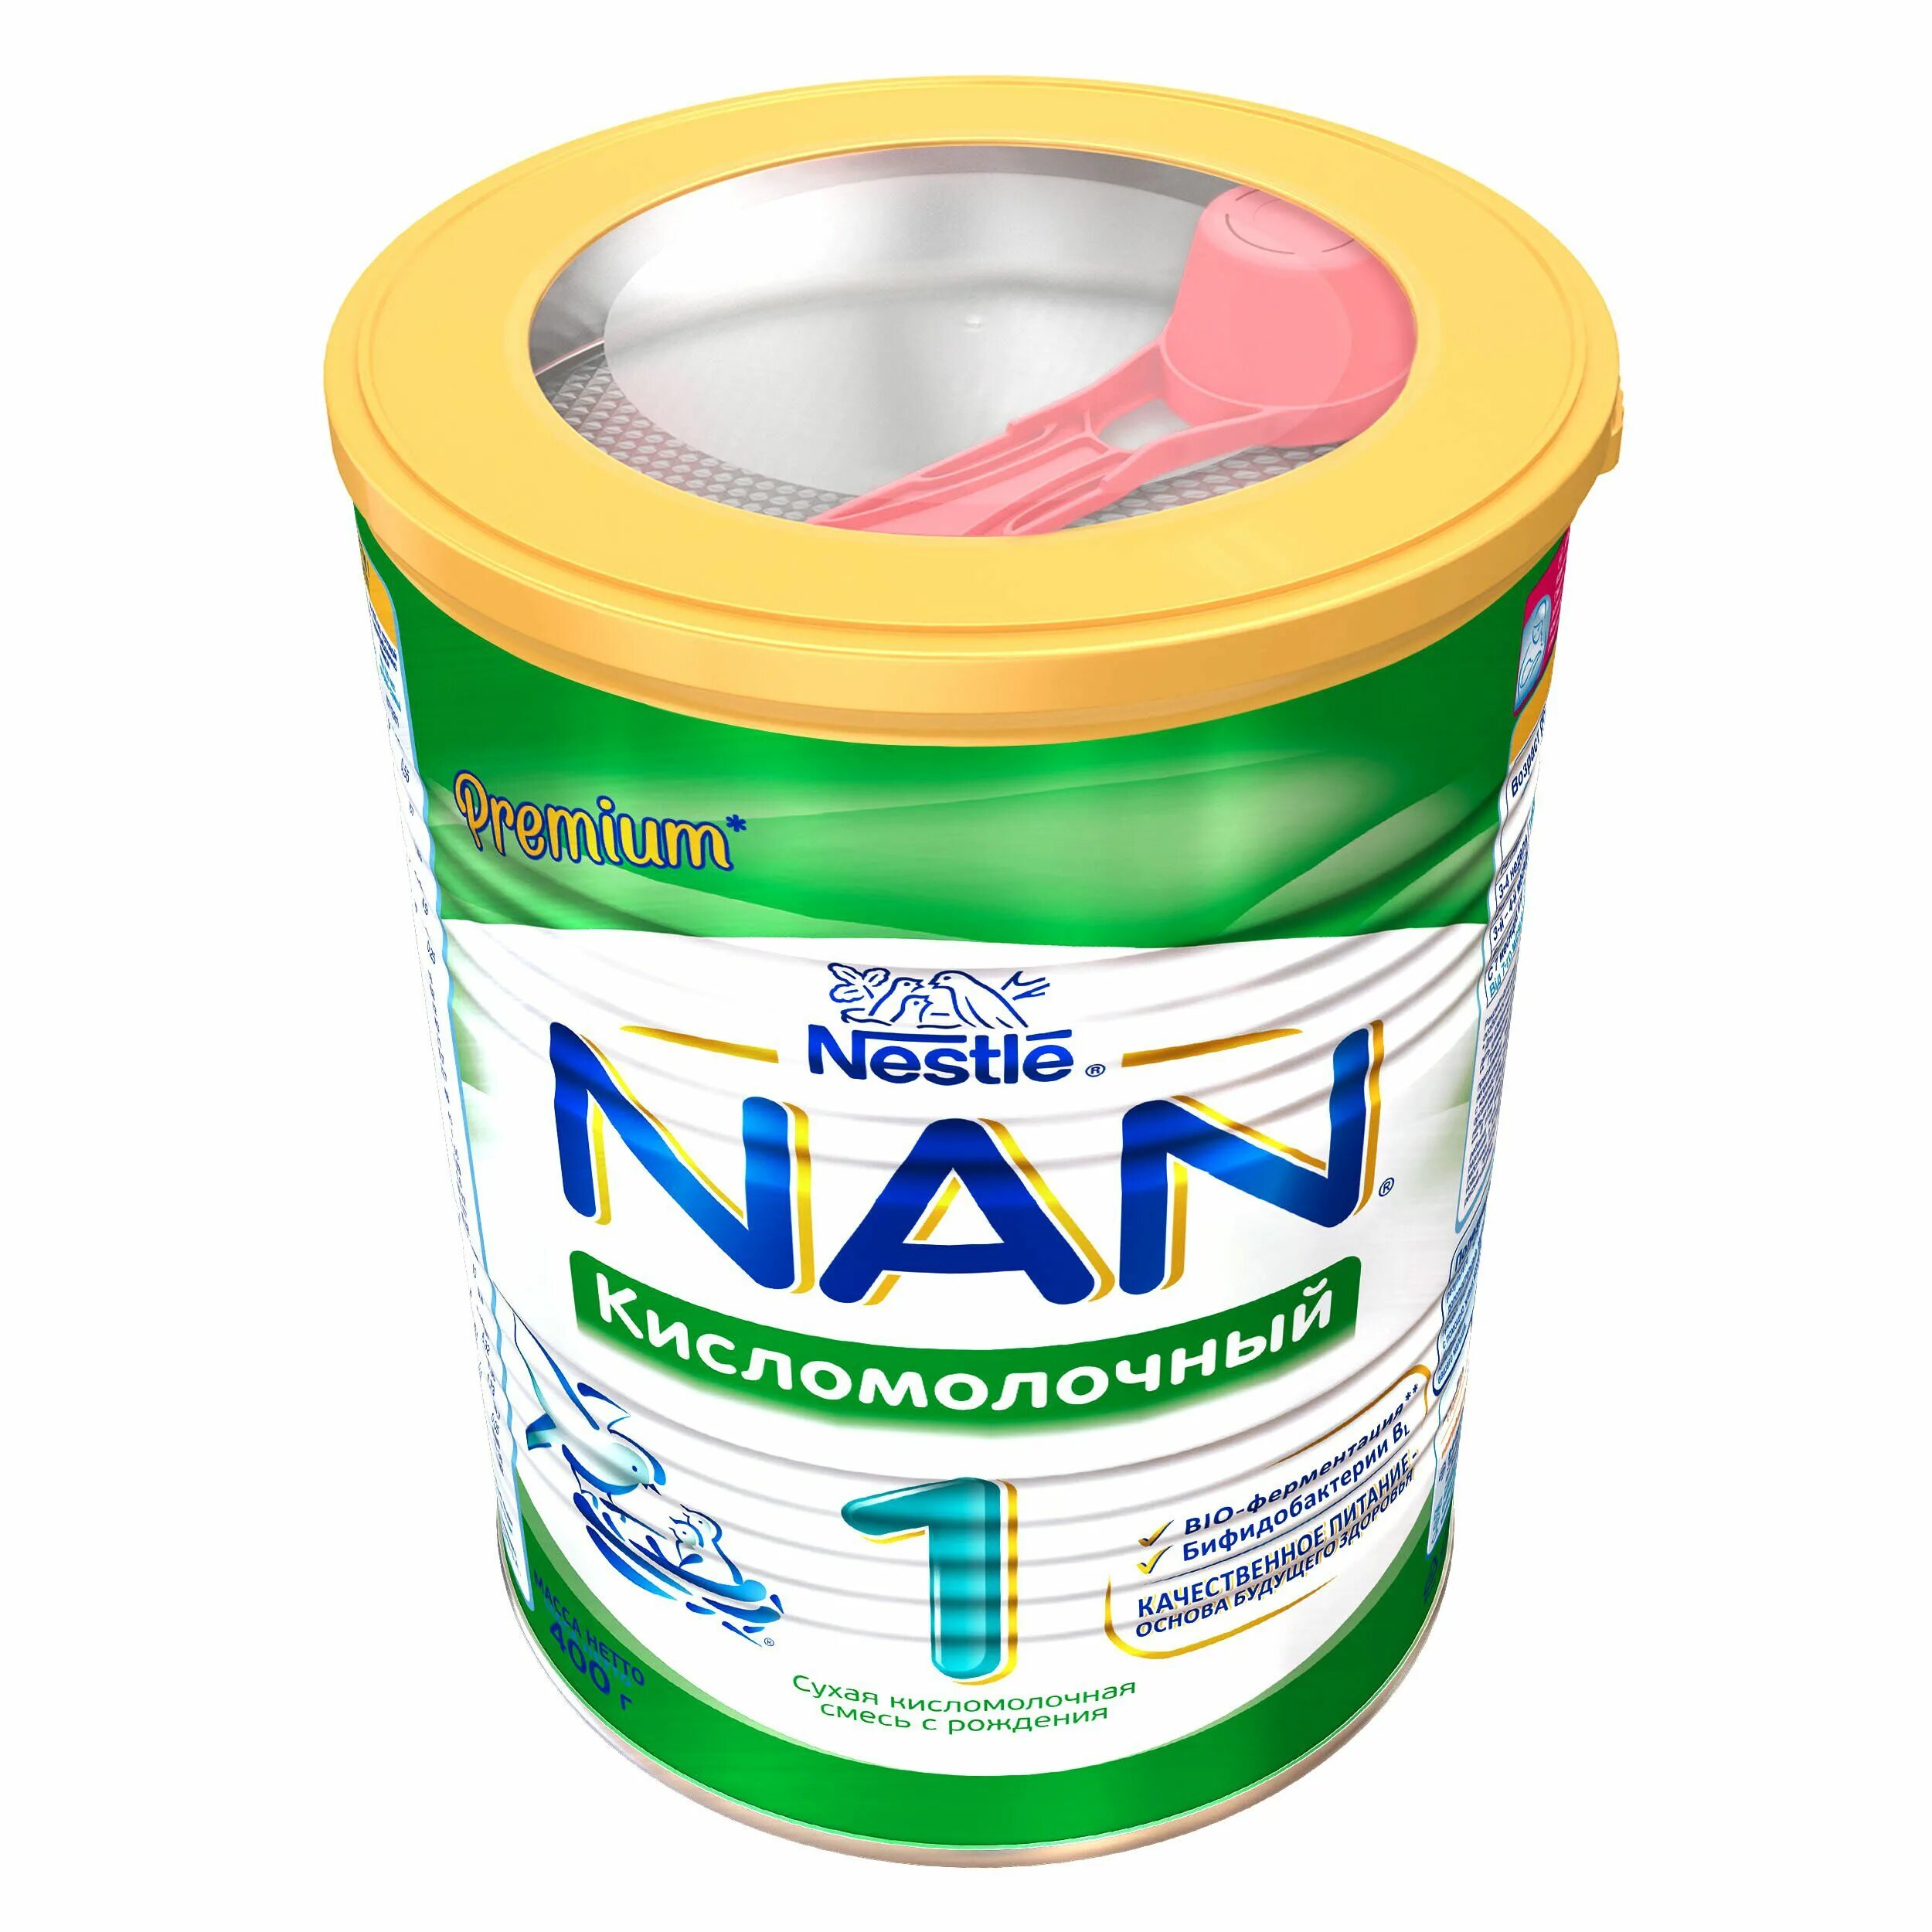 Кисломолочная смесь купить. Смесь nan (Nestlé) кисломолочный 1 (с рождения) 400 г. Нан кисломолочный 1 400 гр. Кисломолочная смесь для новорожденных нан 1. Кисломолочная смесь нан 3.